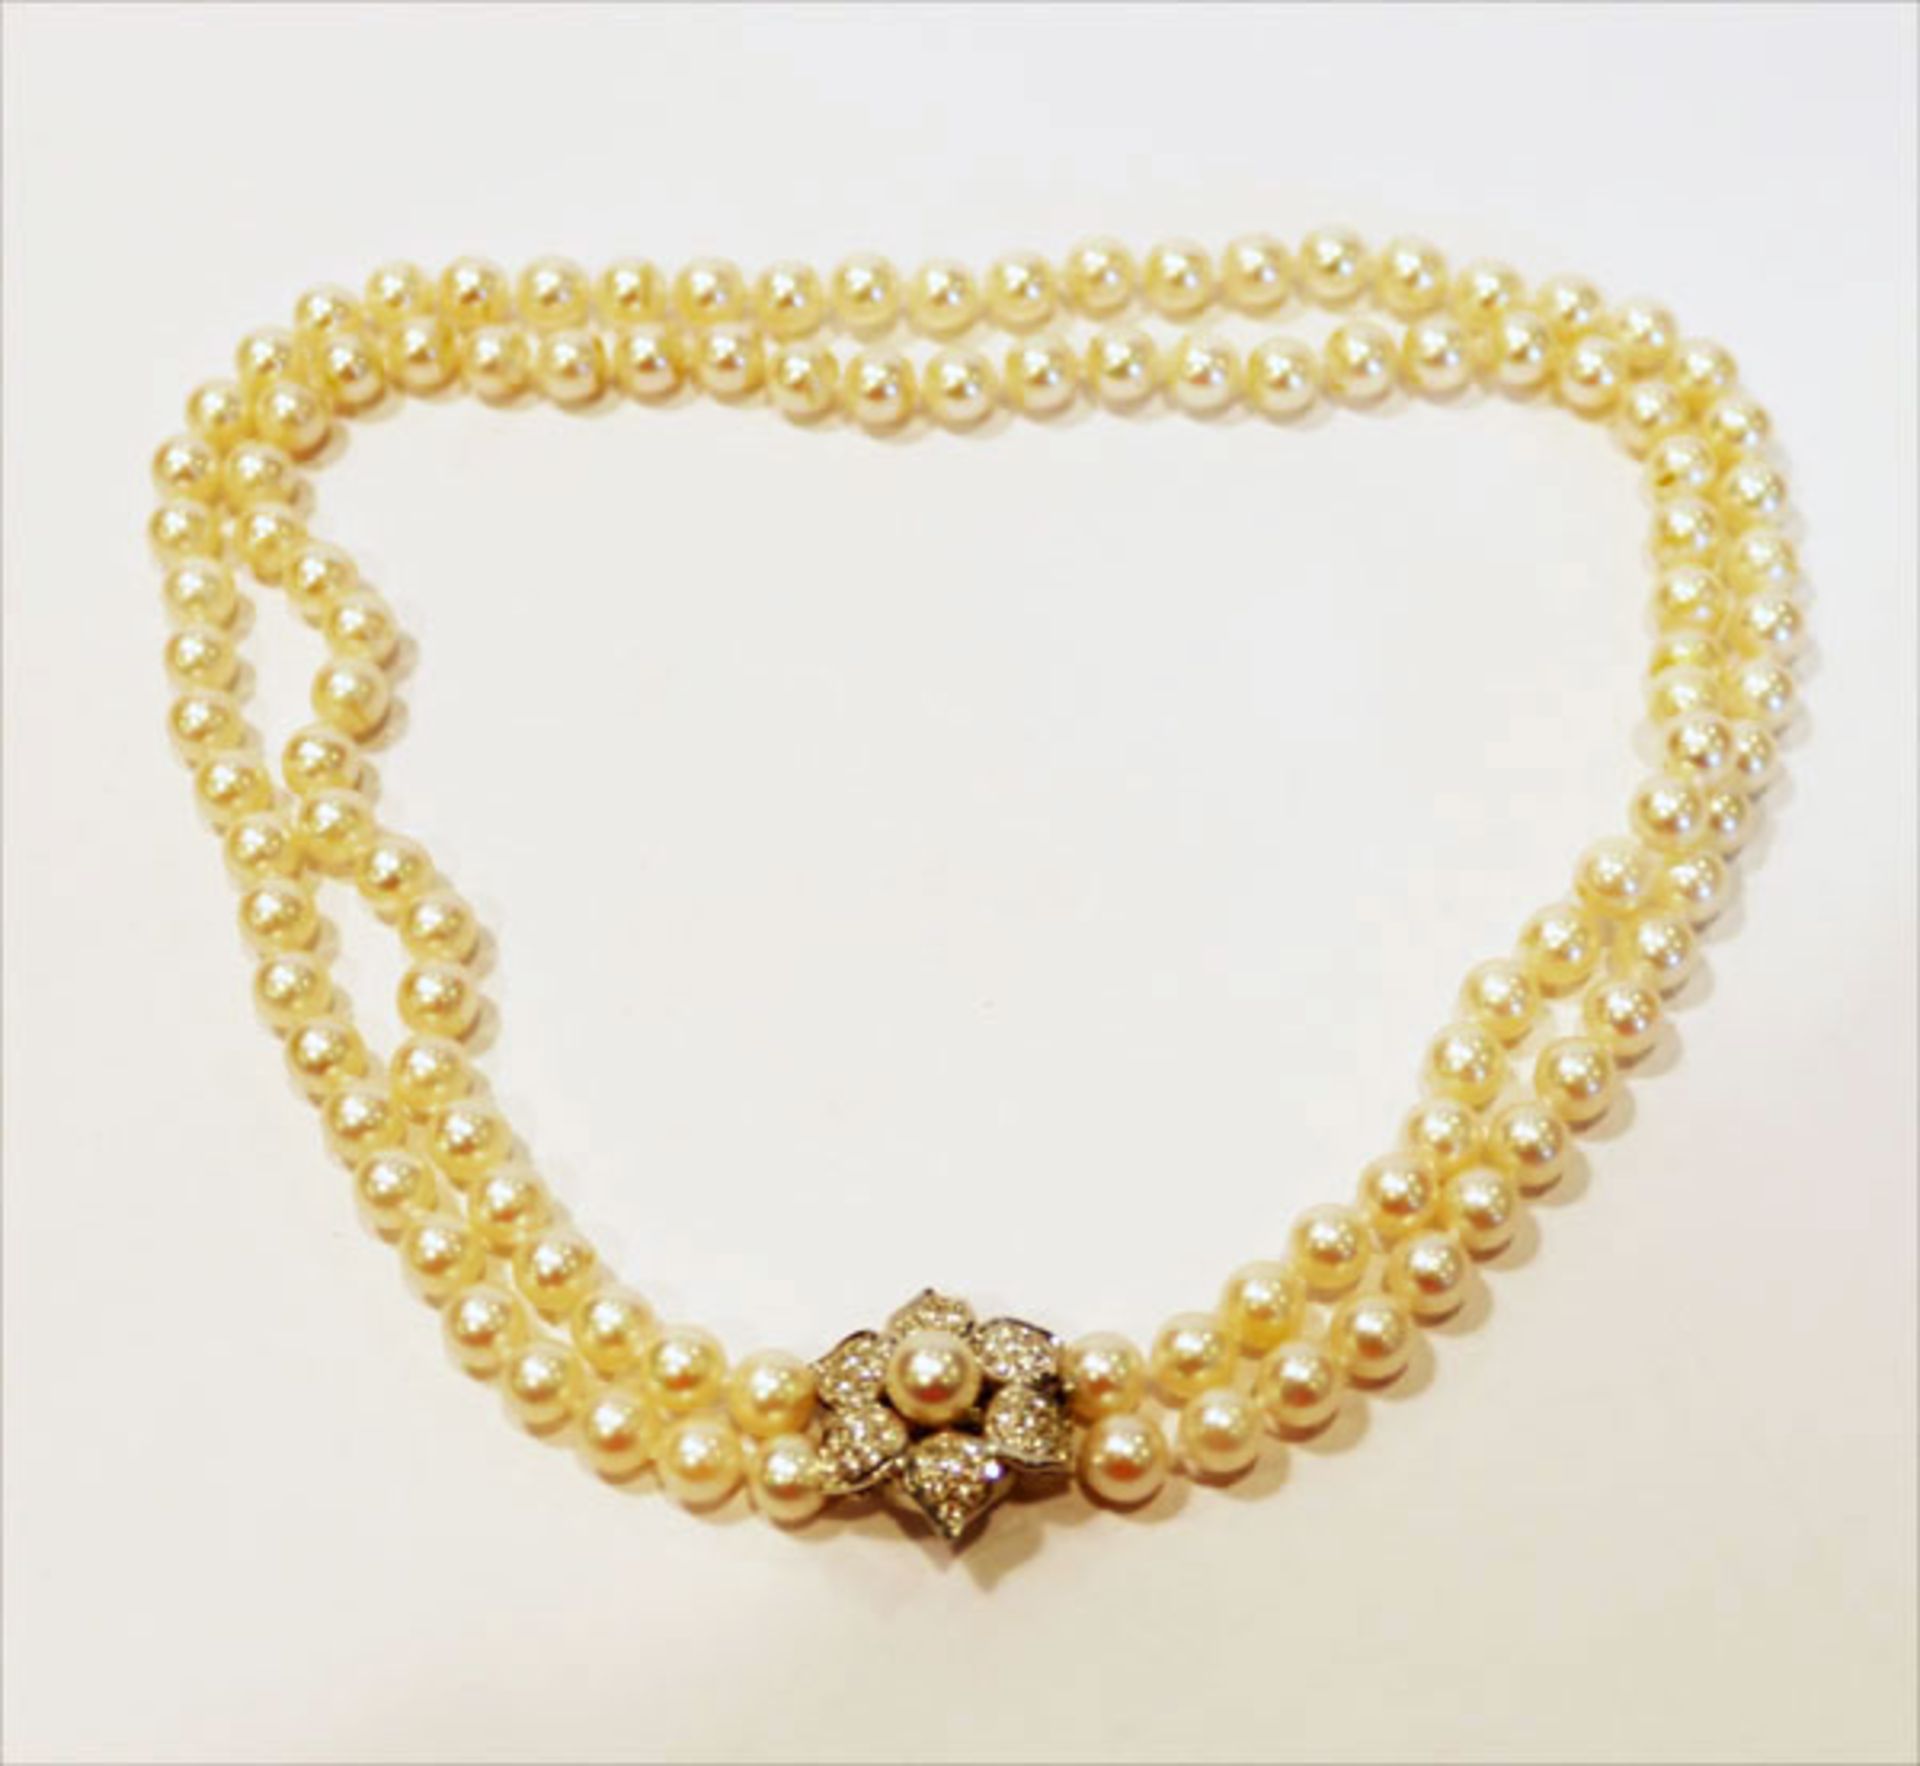 Perlencollier 2-reihig mit 18 k Weißgold Schließe in Blütenform mit Diamanten und einer Perle